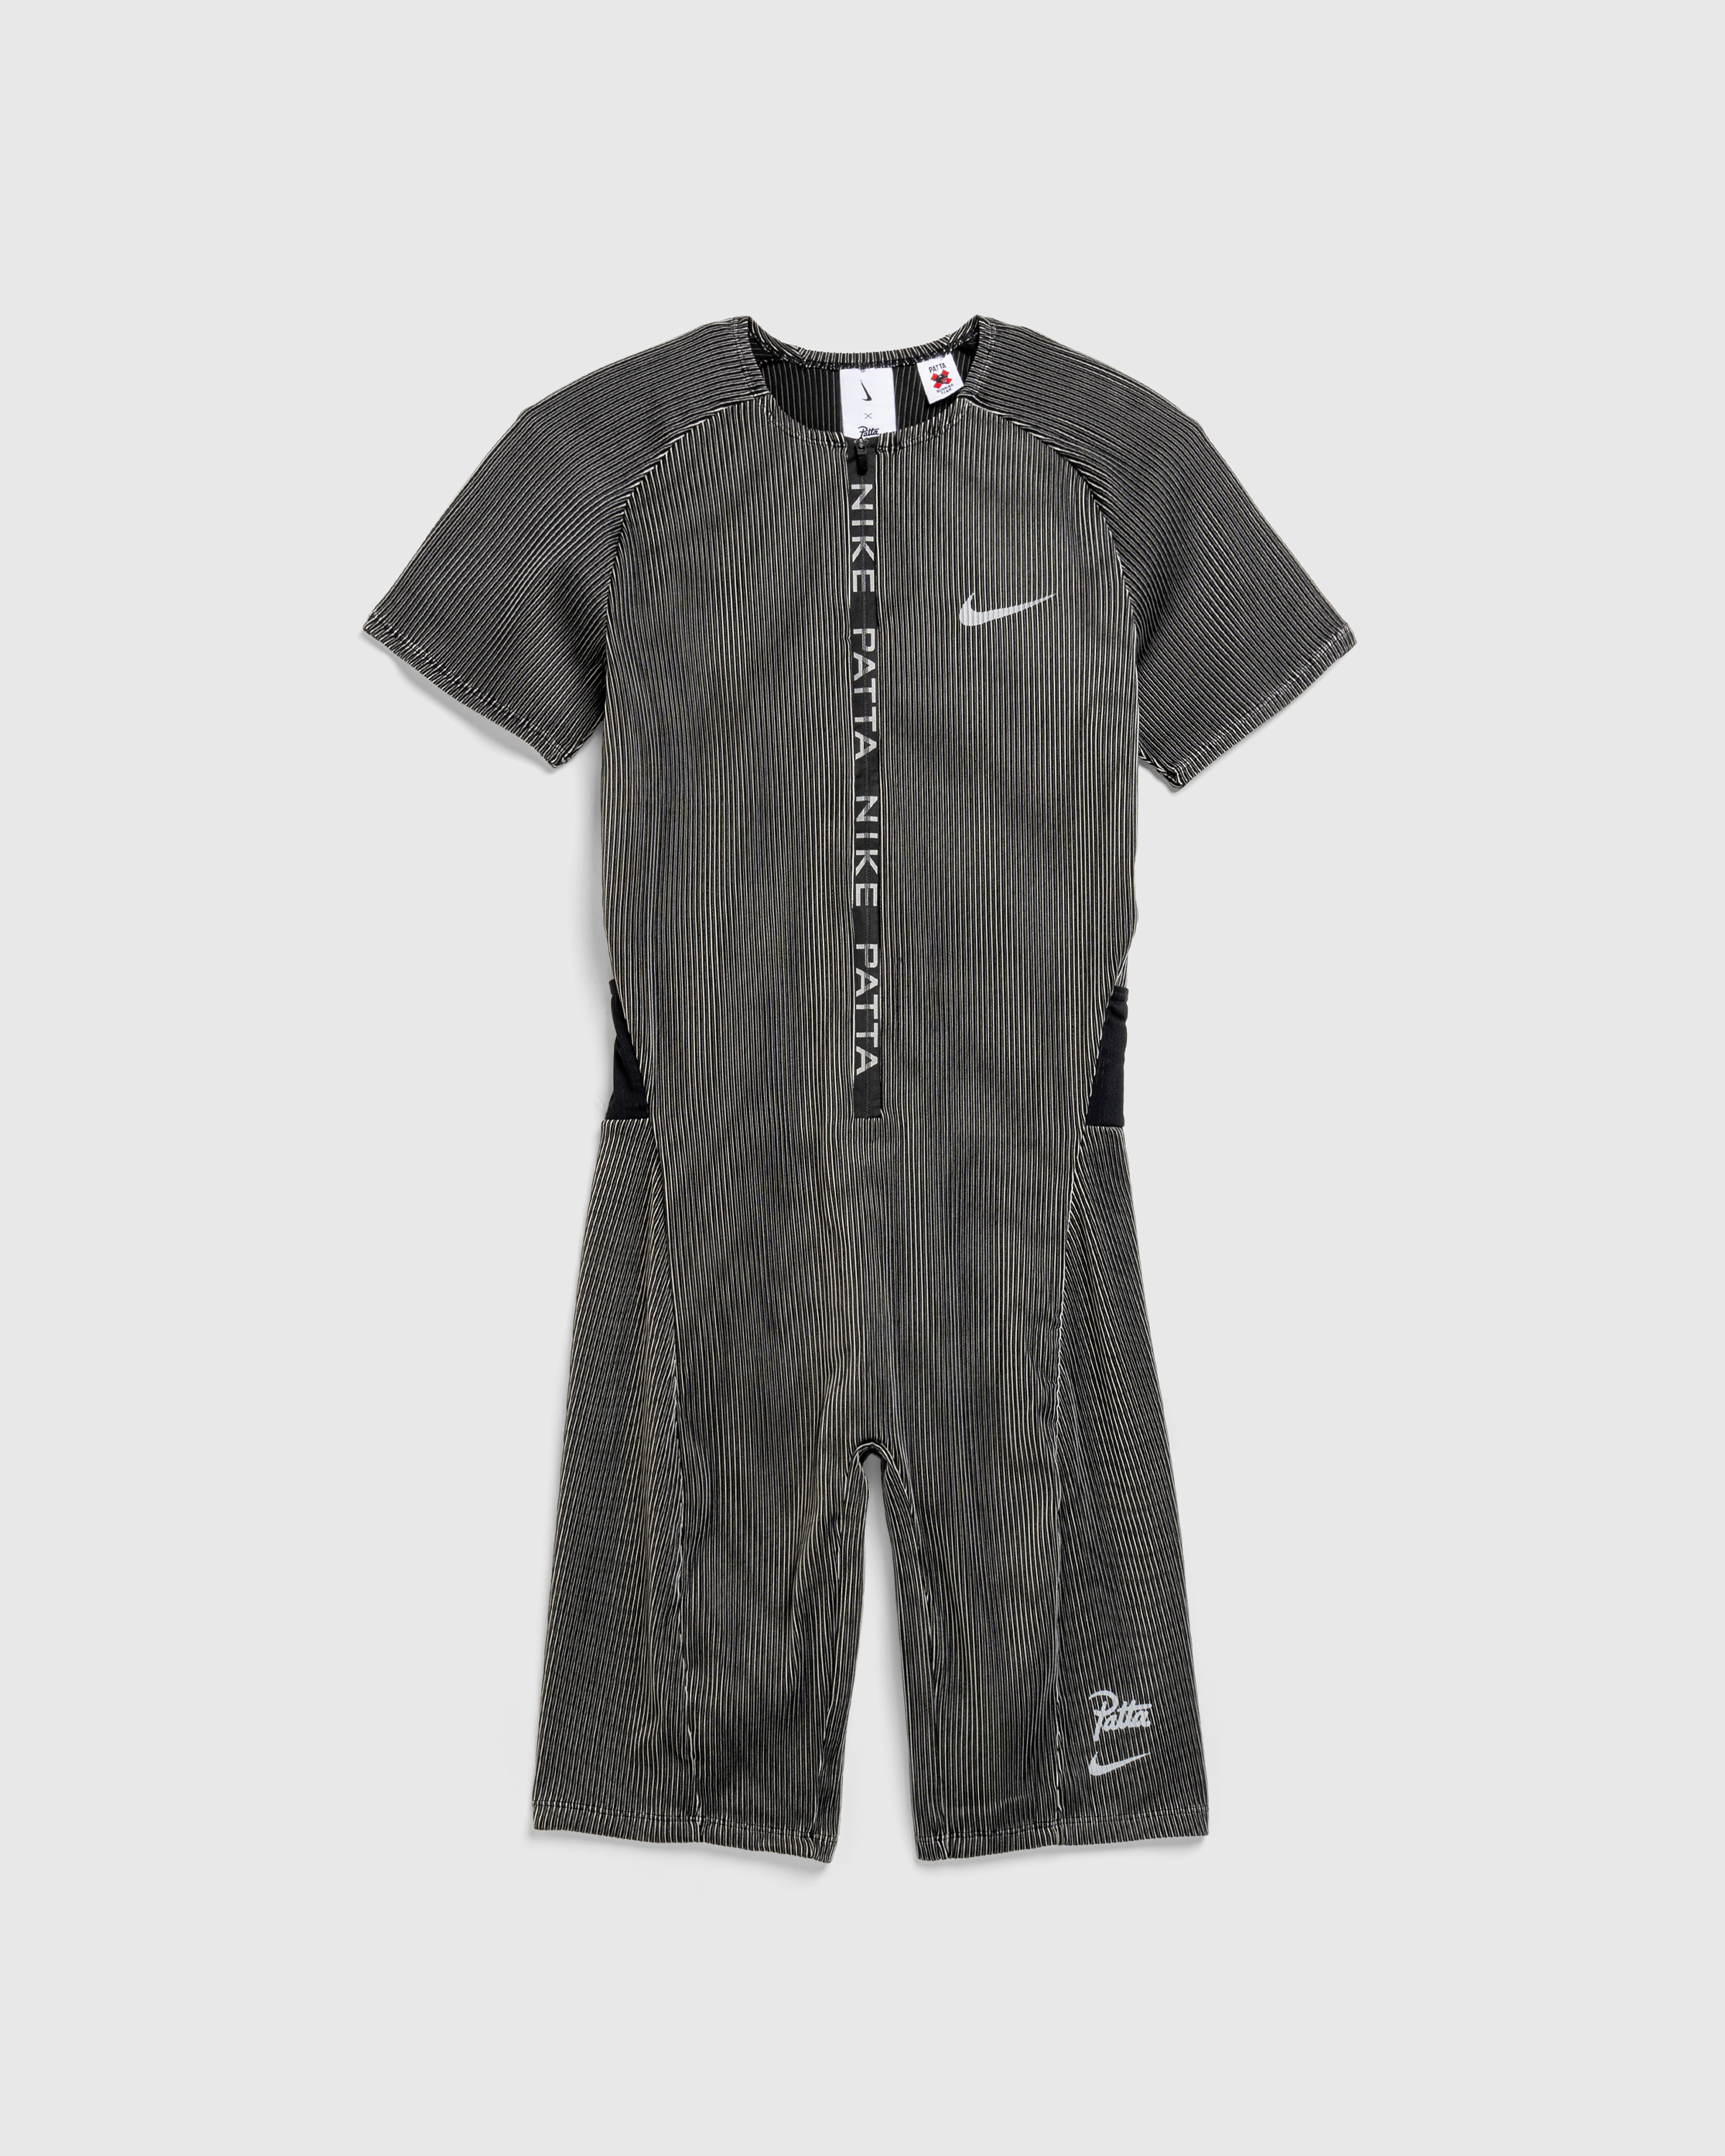 Nike x Patta – U NRG Nike x Patta Race Suit Black - Overshirt - Black - Image 1